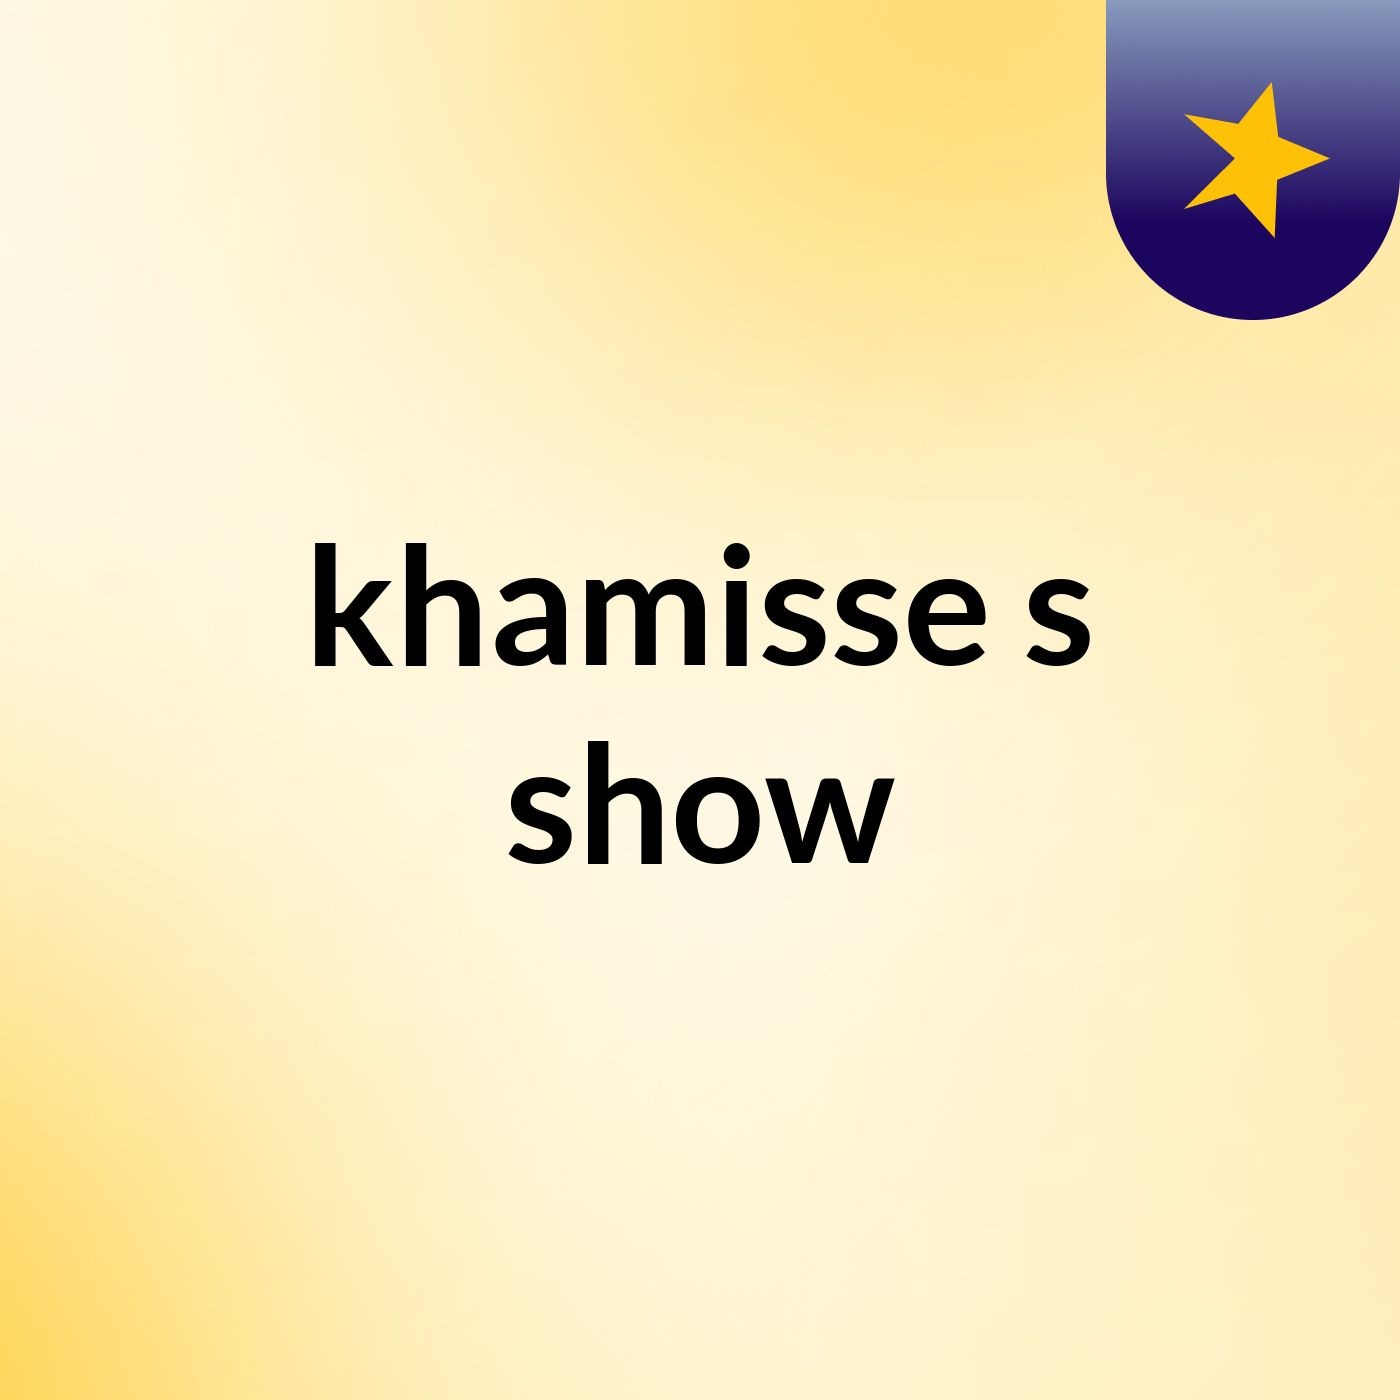 khamisse's show